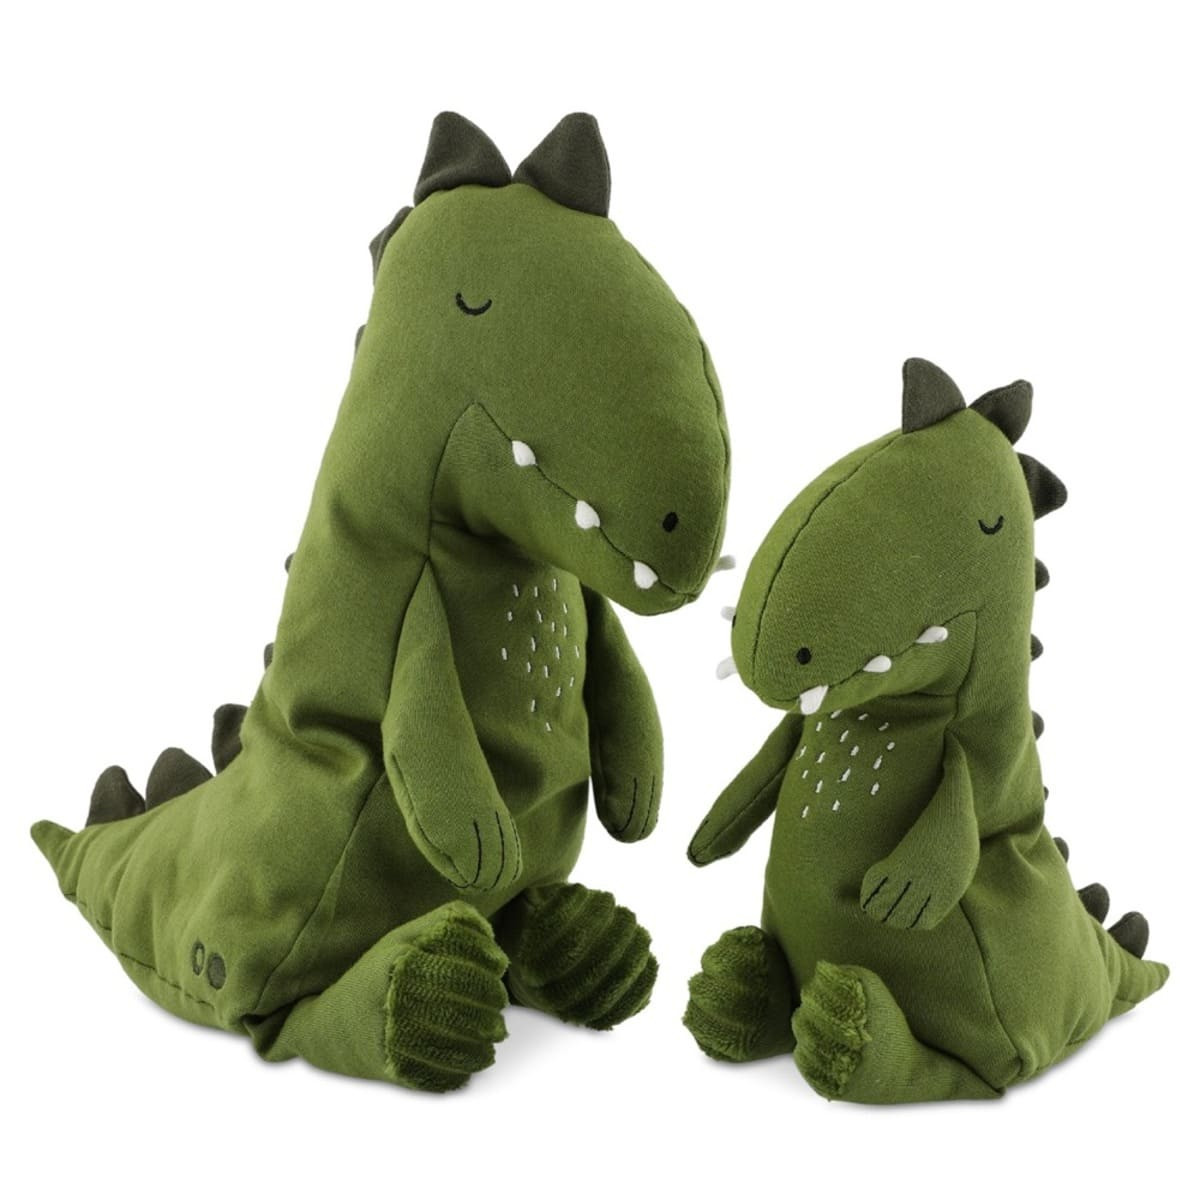 Kuscheltier Baby Dino Trixie, Kuscheltier personalisiert, Dino Stofftier Baby grün klein